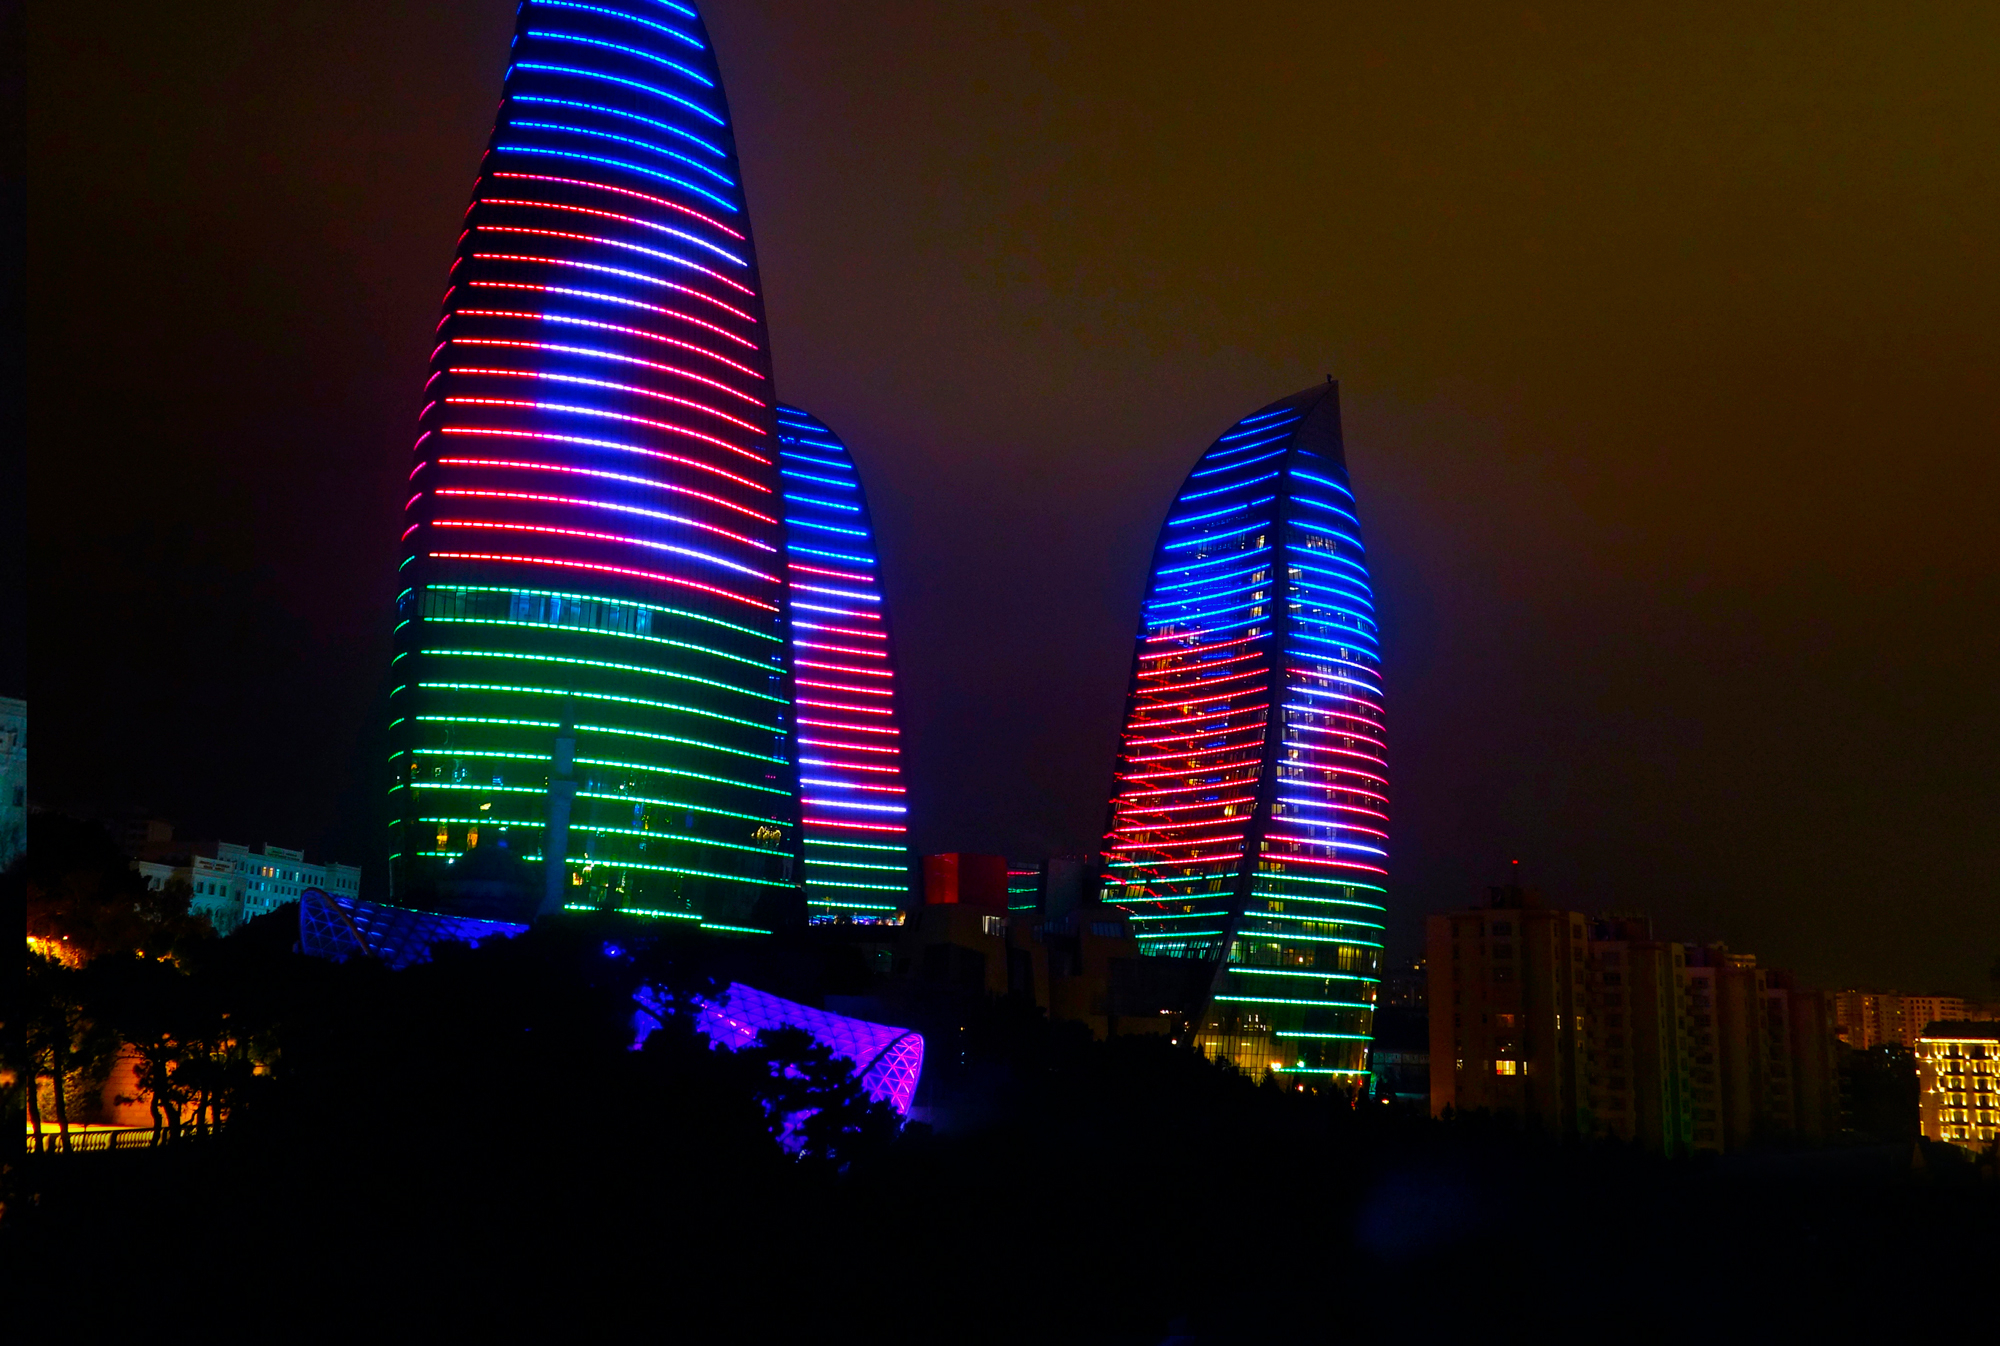 27 сентября в Азербайджане будет отмечаться День памяти